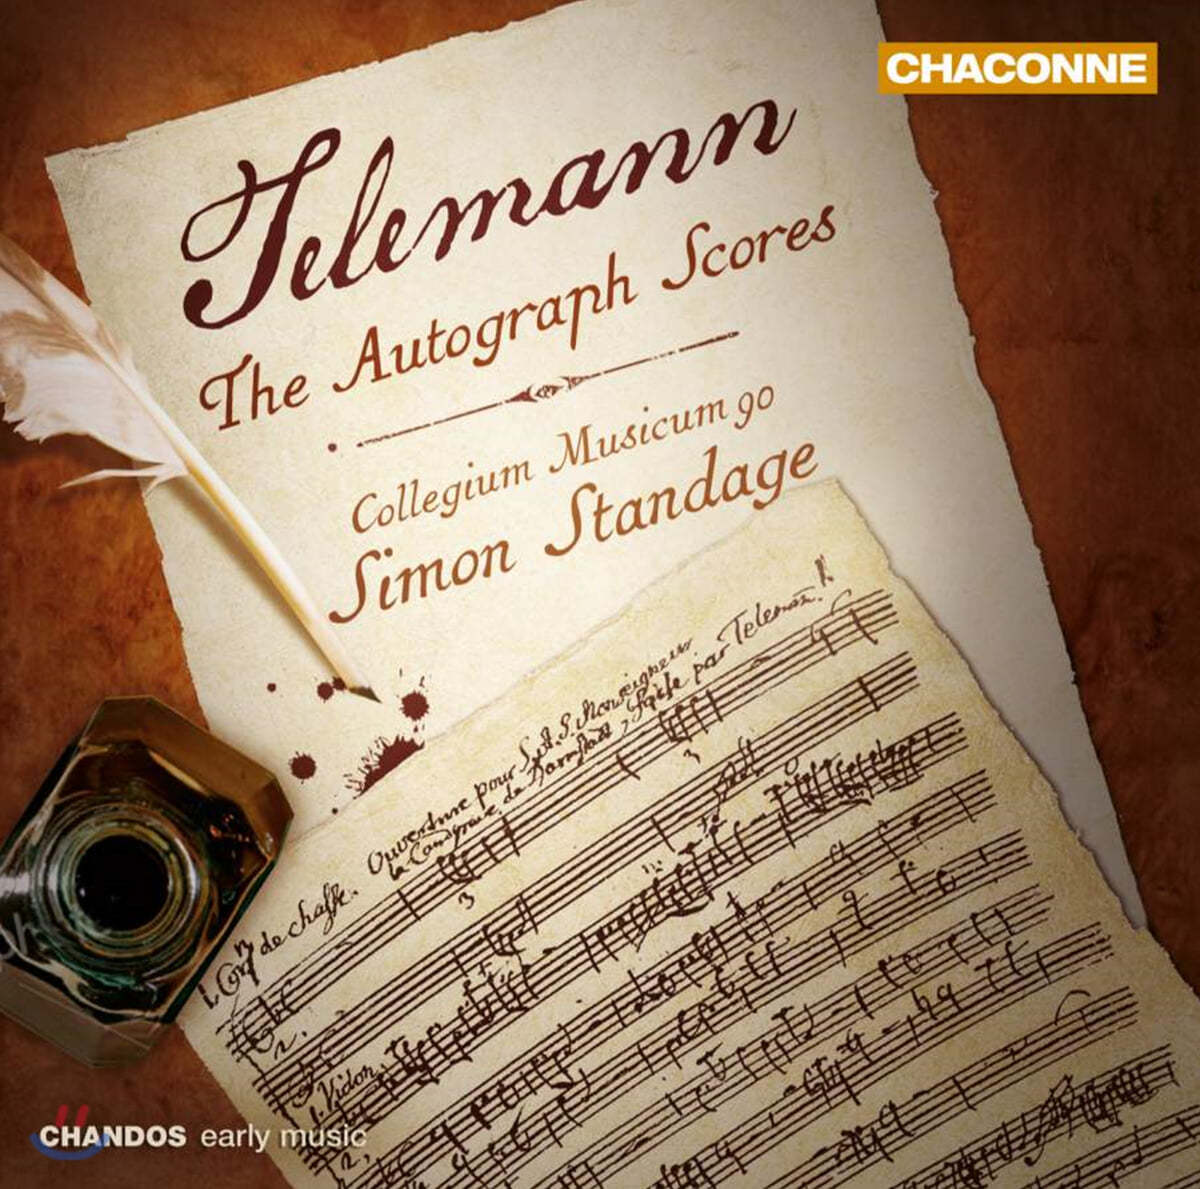 Simon Standage 텔레만: 자필 악보 - 서곡, 디베르티멘토 (Telemann: The Autograph Scores - Overtures, Divertimento)